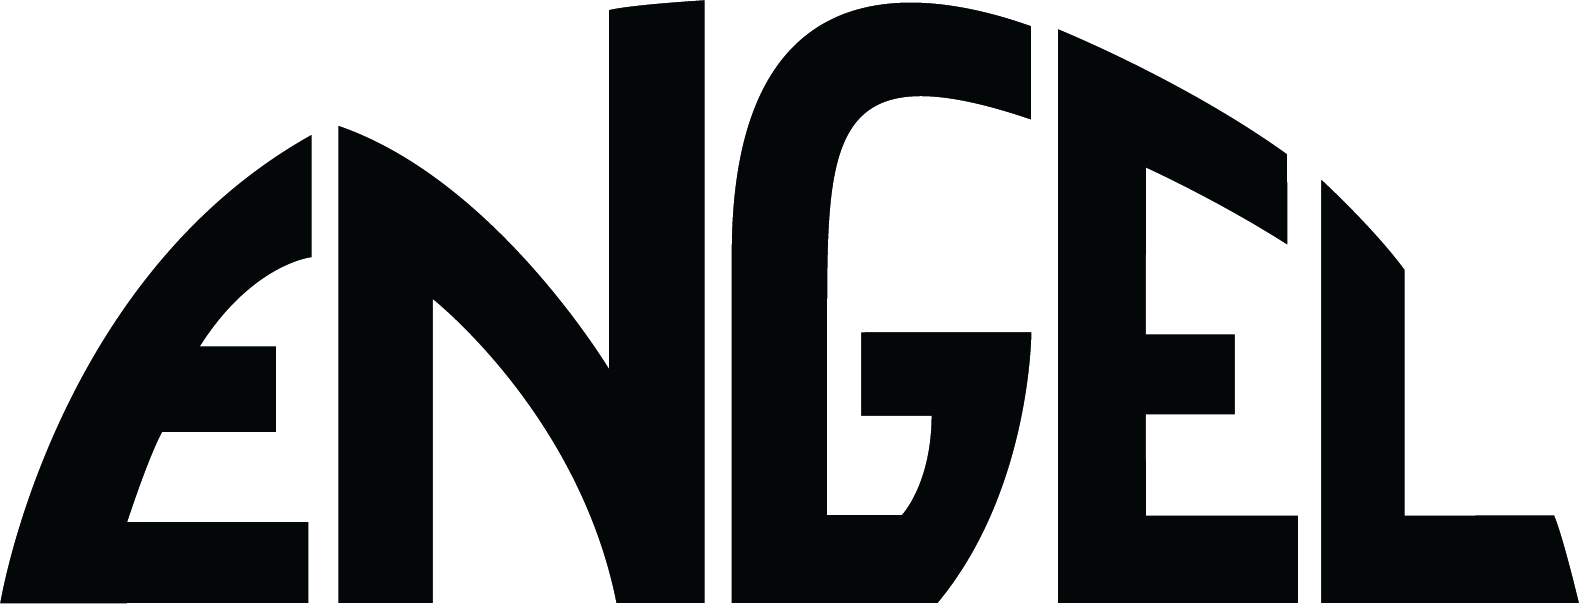 the logo for Engel